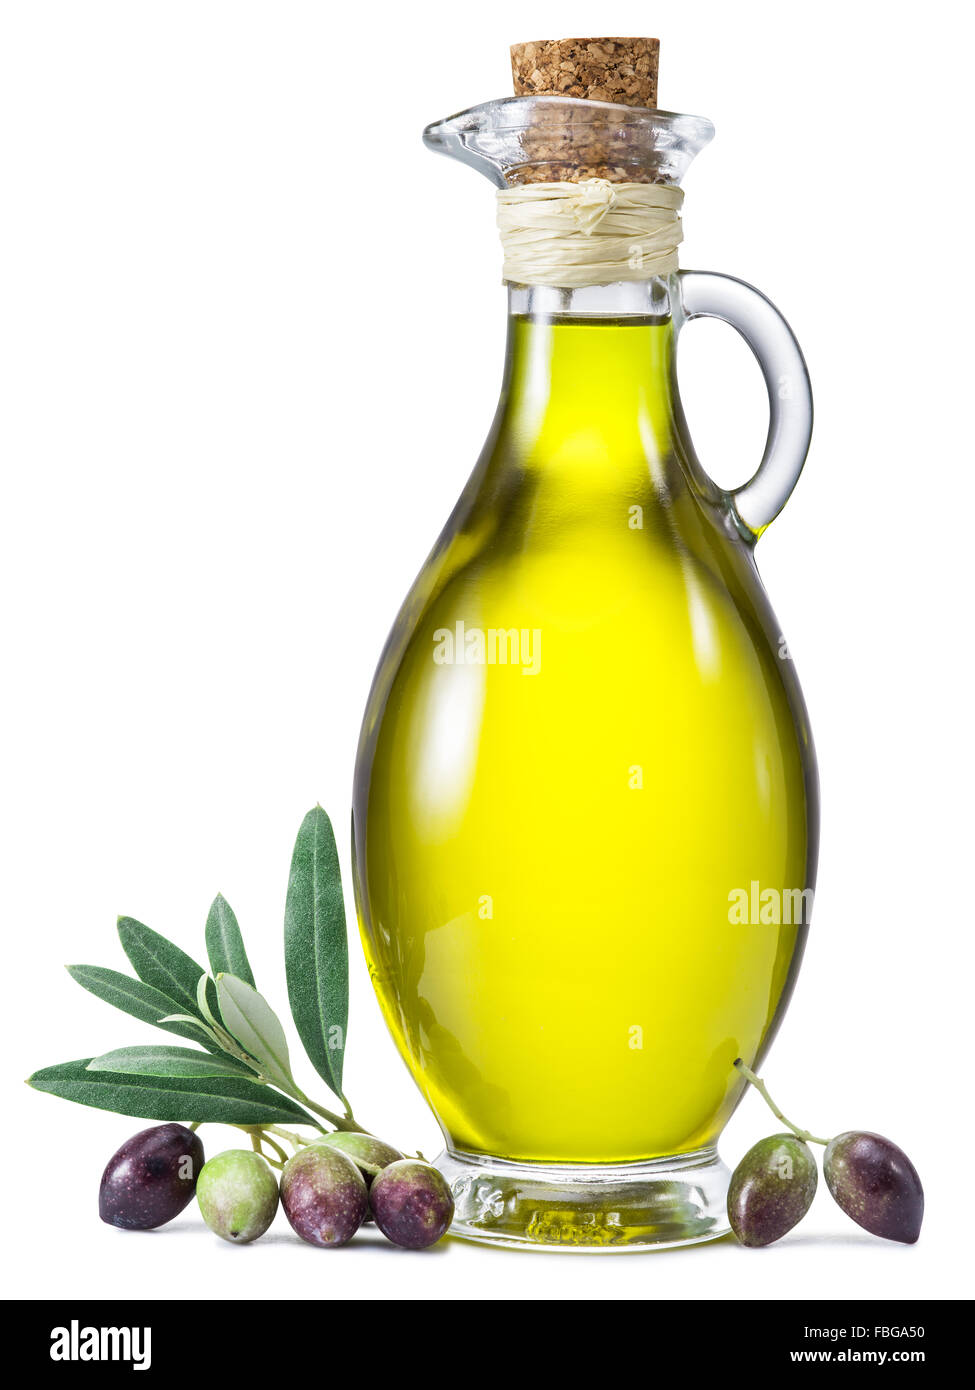 Eine Flasche Olivenöl und Beeren auf einem weißen Hintergrund. Datei enthält Beschneidungspfade. Stockfoto